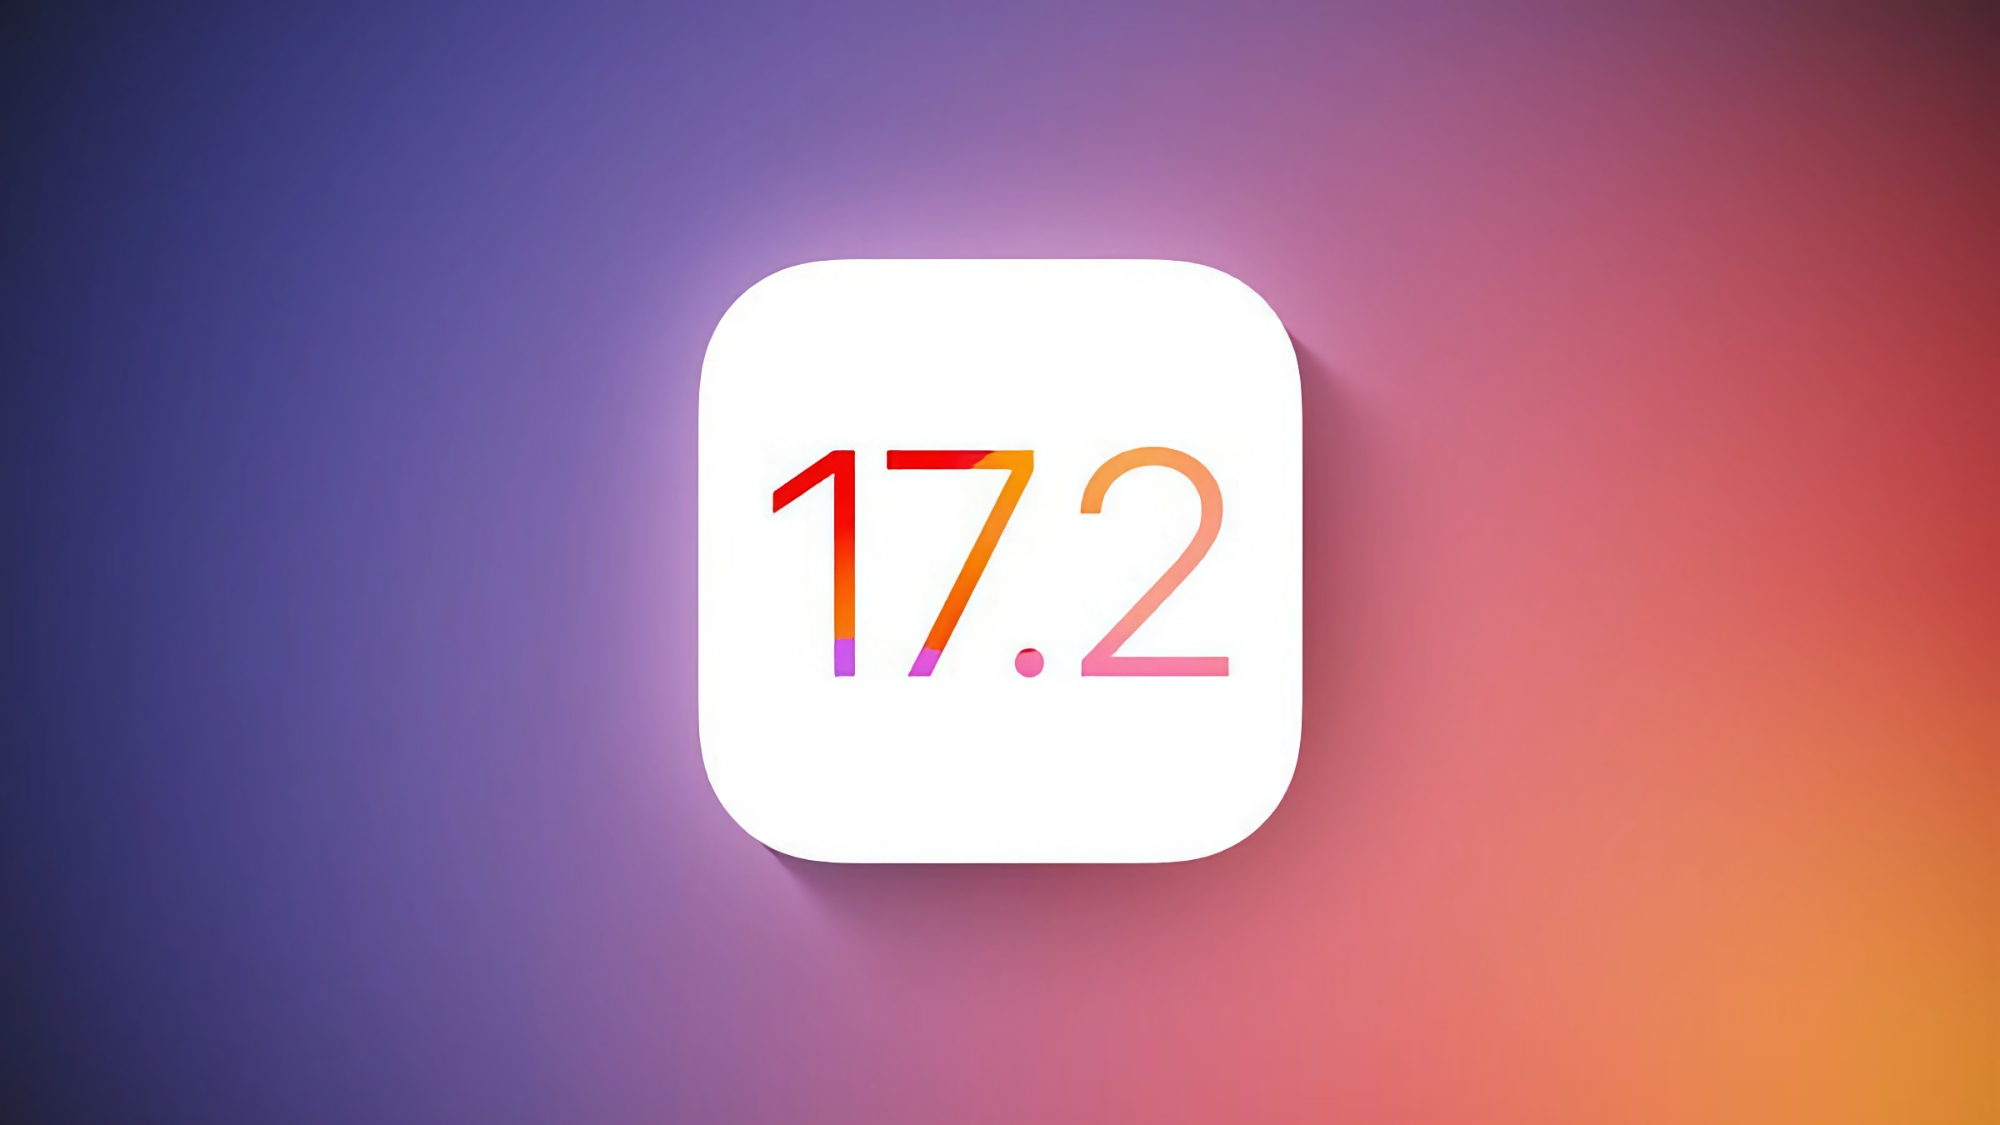 Apple udostępniło publiczną wersję beta systemu iOS 17.2 z aplikacją Journal